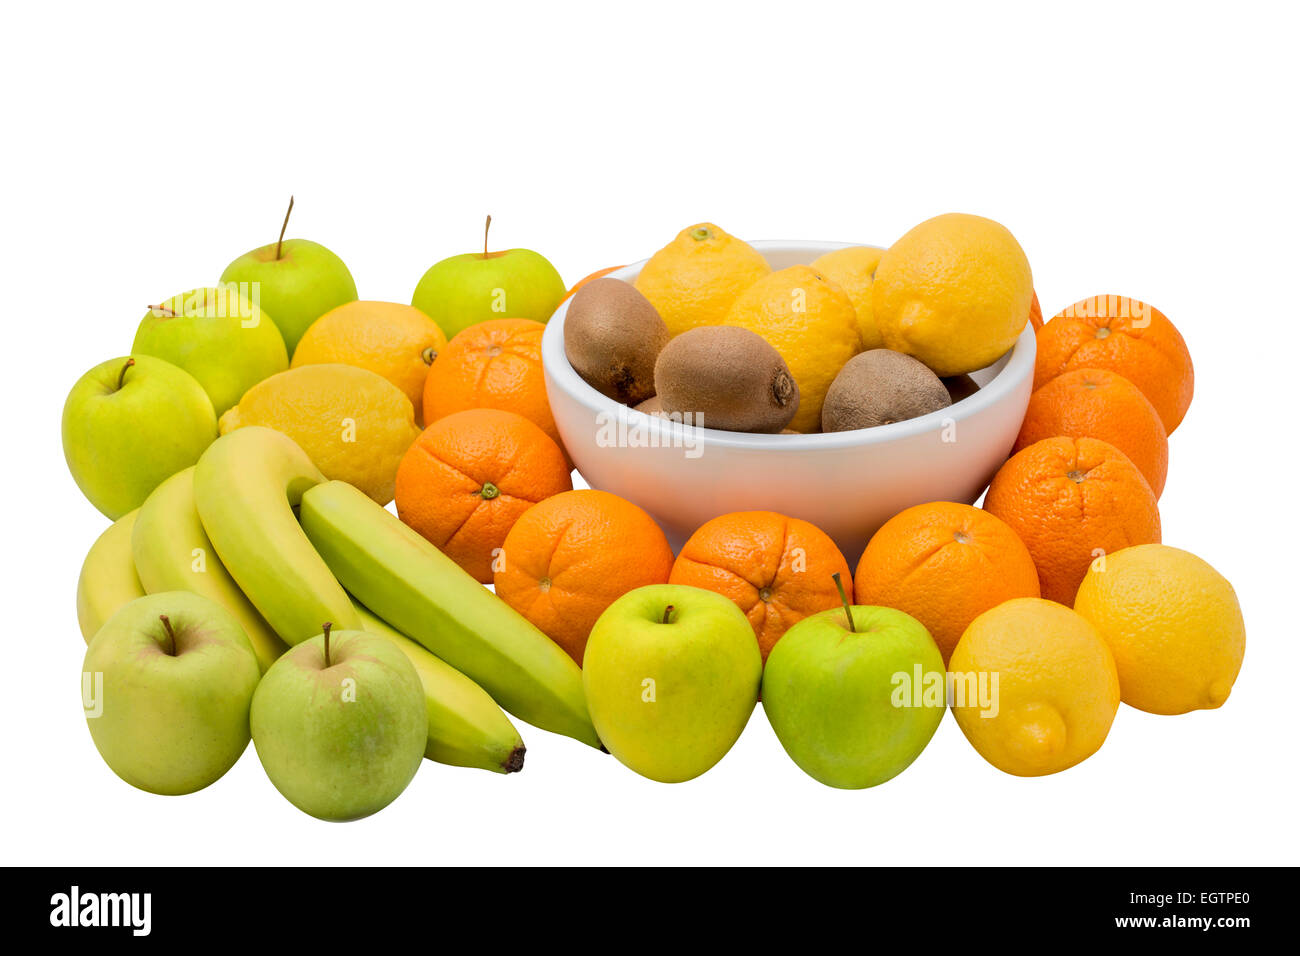 Fruit isolated on white. Bananas, oranges, kiwi, apples, and lemons. Stock Photo